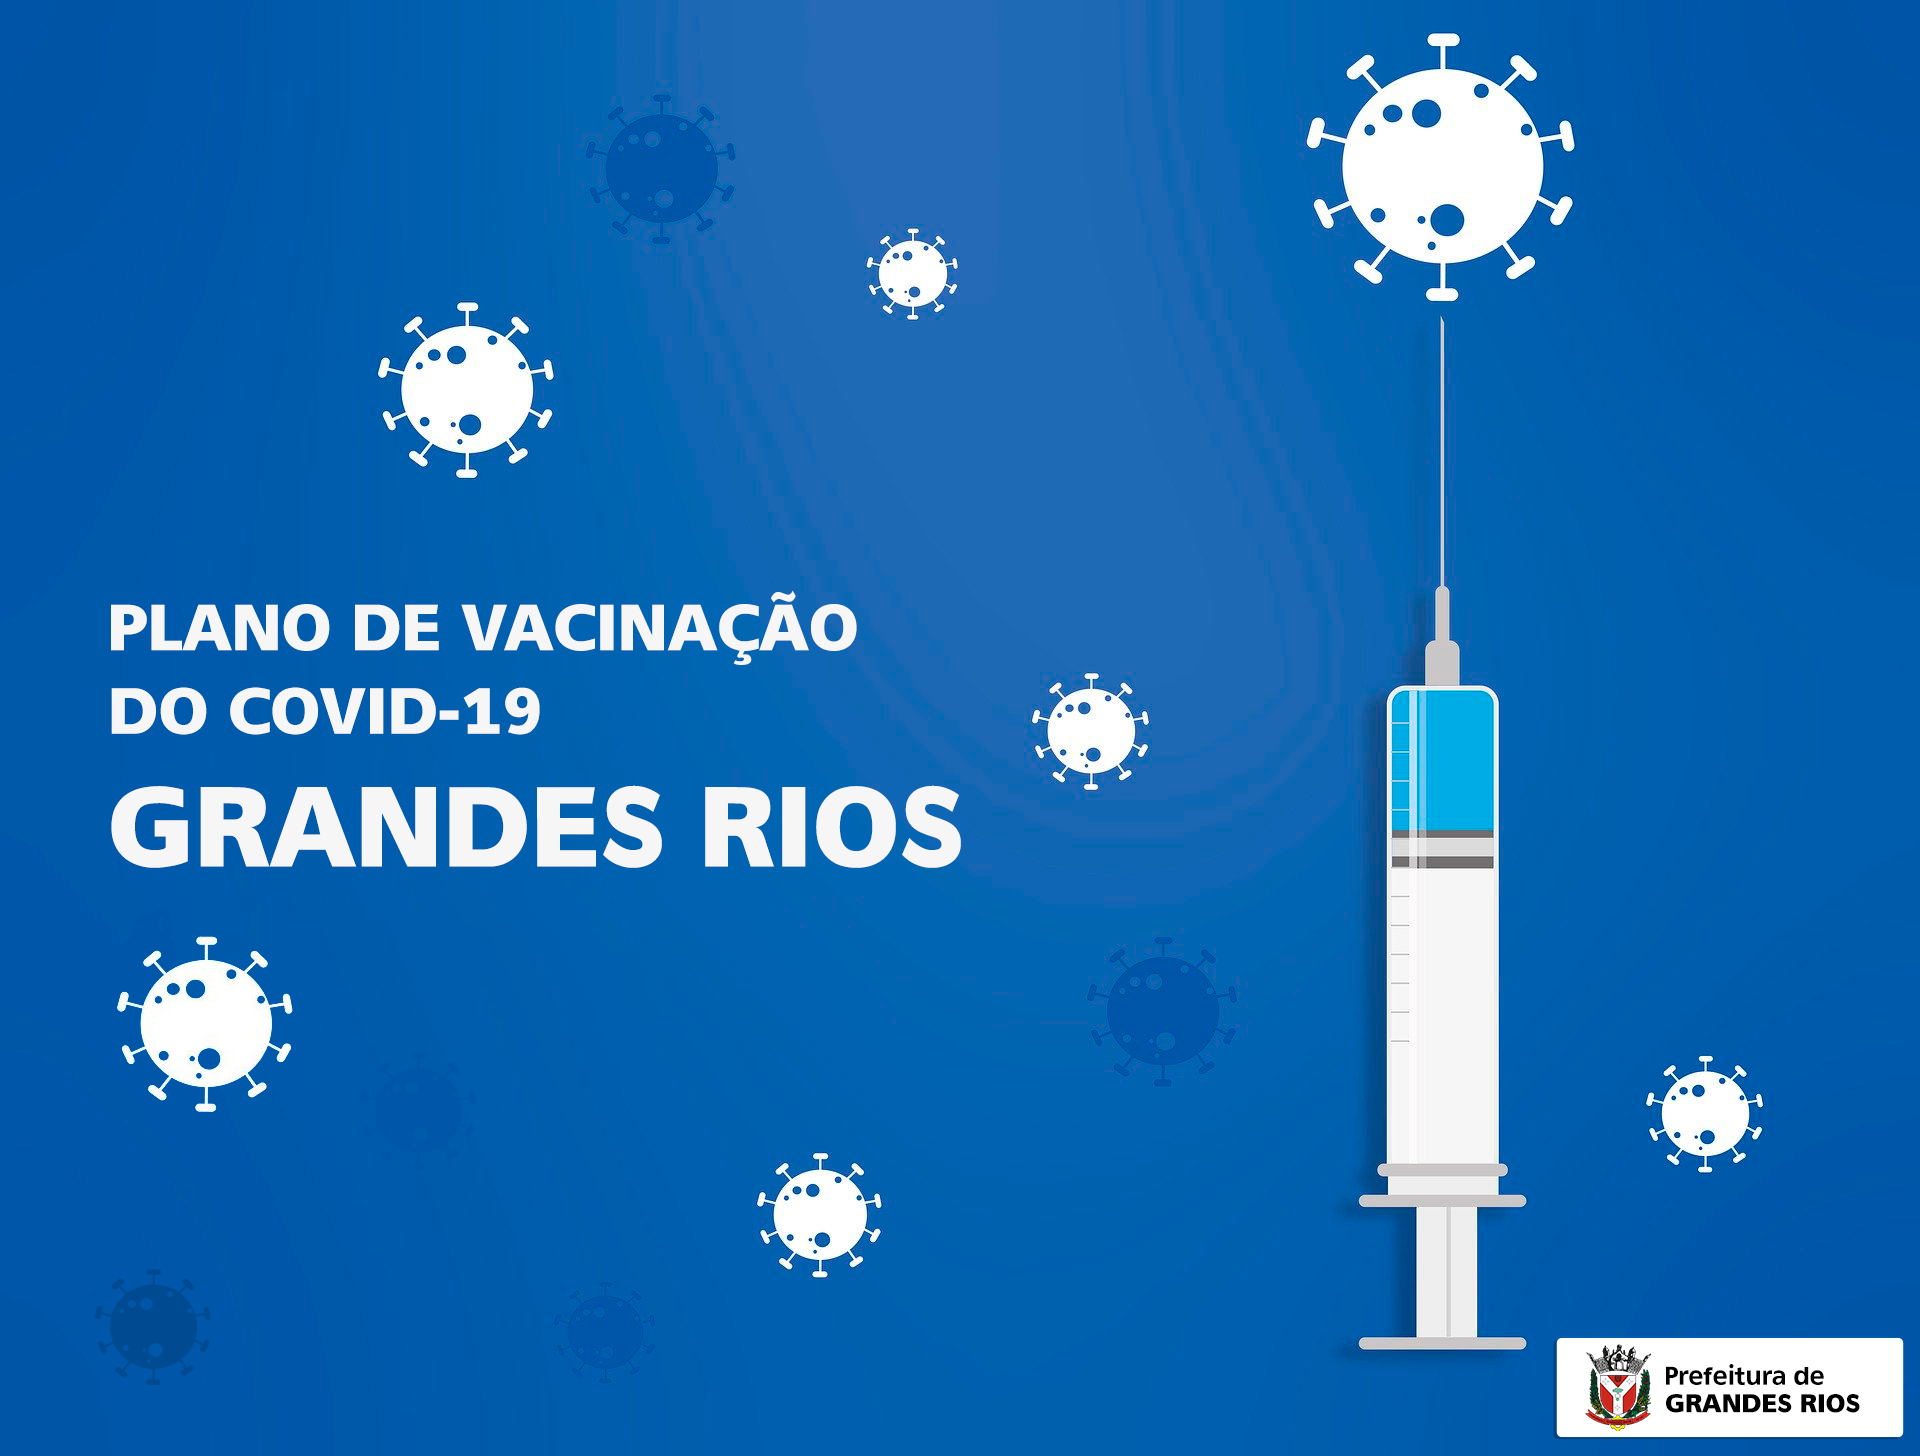 PLANO DE VACINAÇÃO DO COVID-19 - GRANDES RIOS